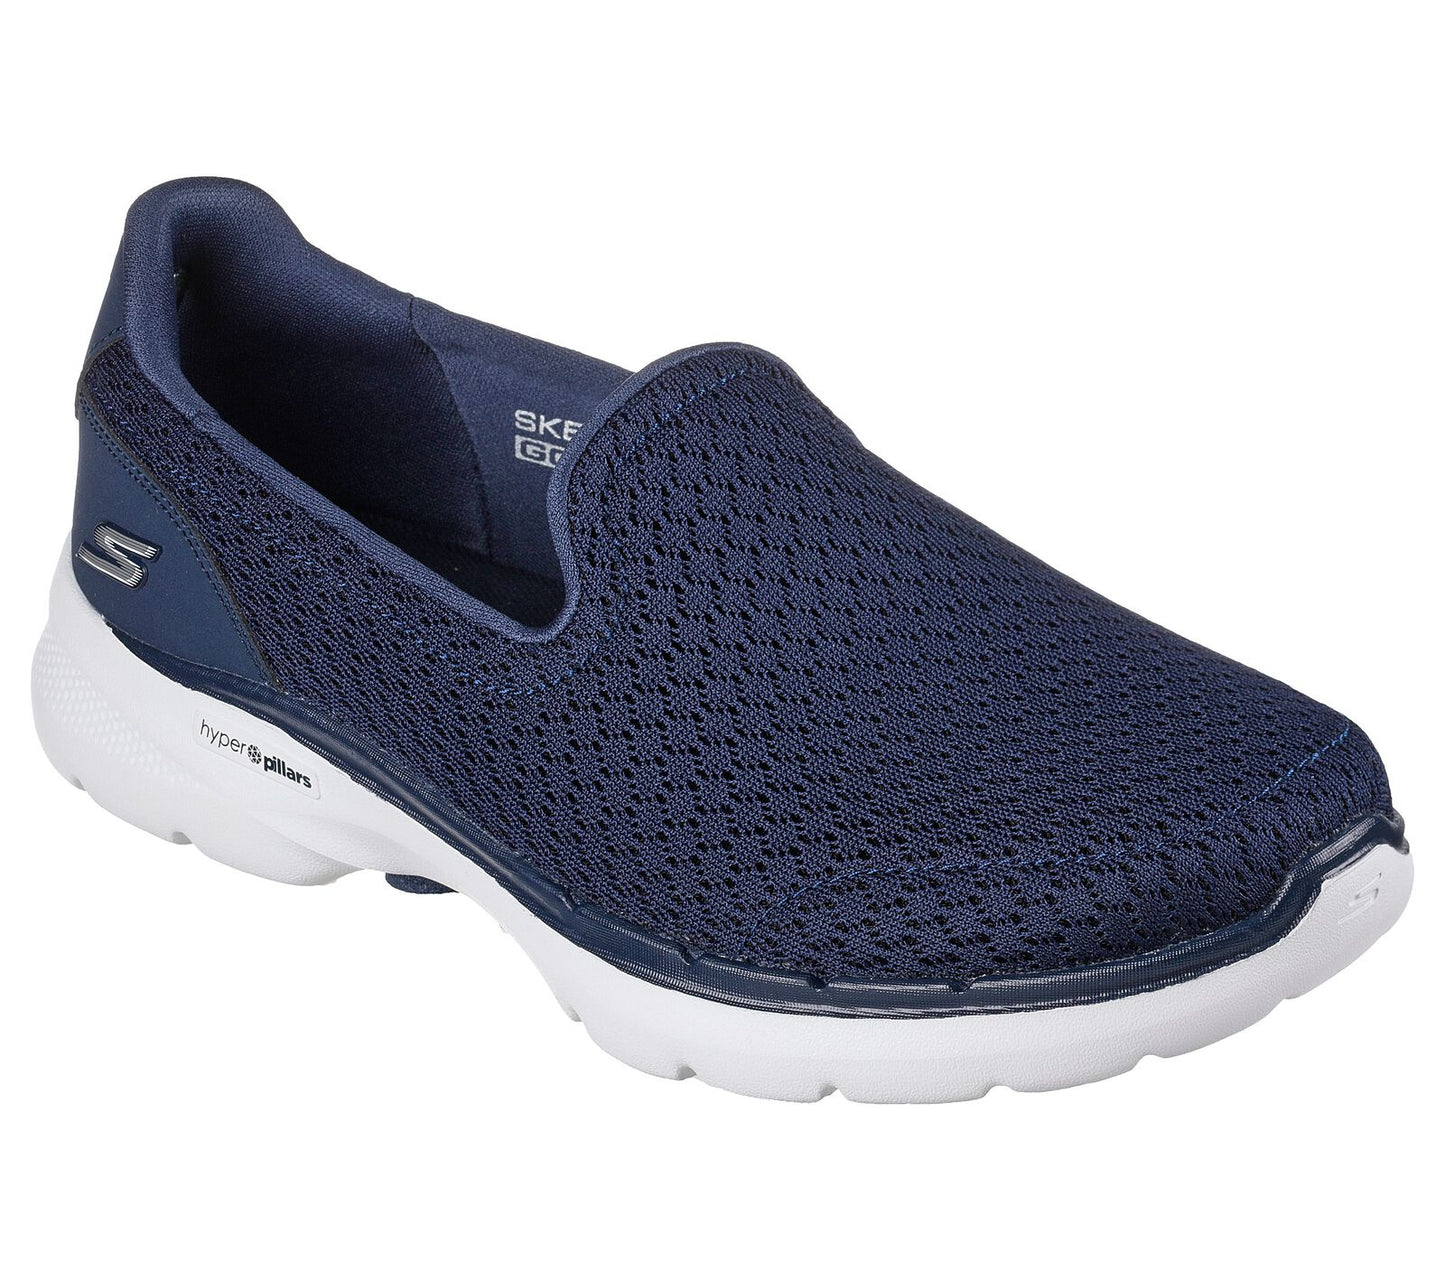 Skechers Go Walk 6 Sea coast - navy - Kirbys Footwear Ltd